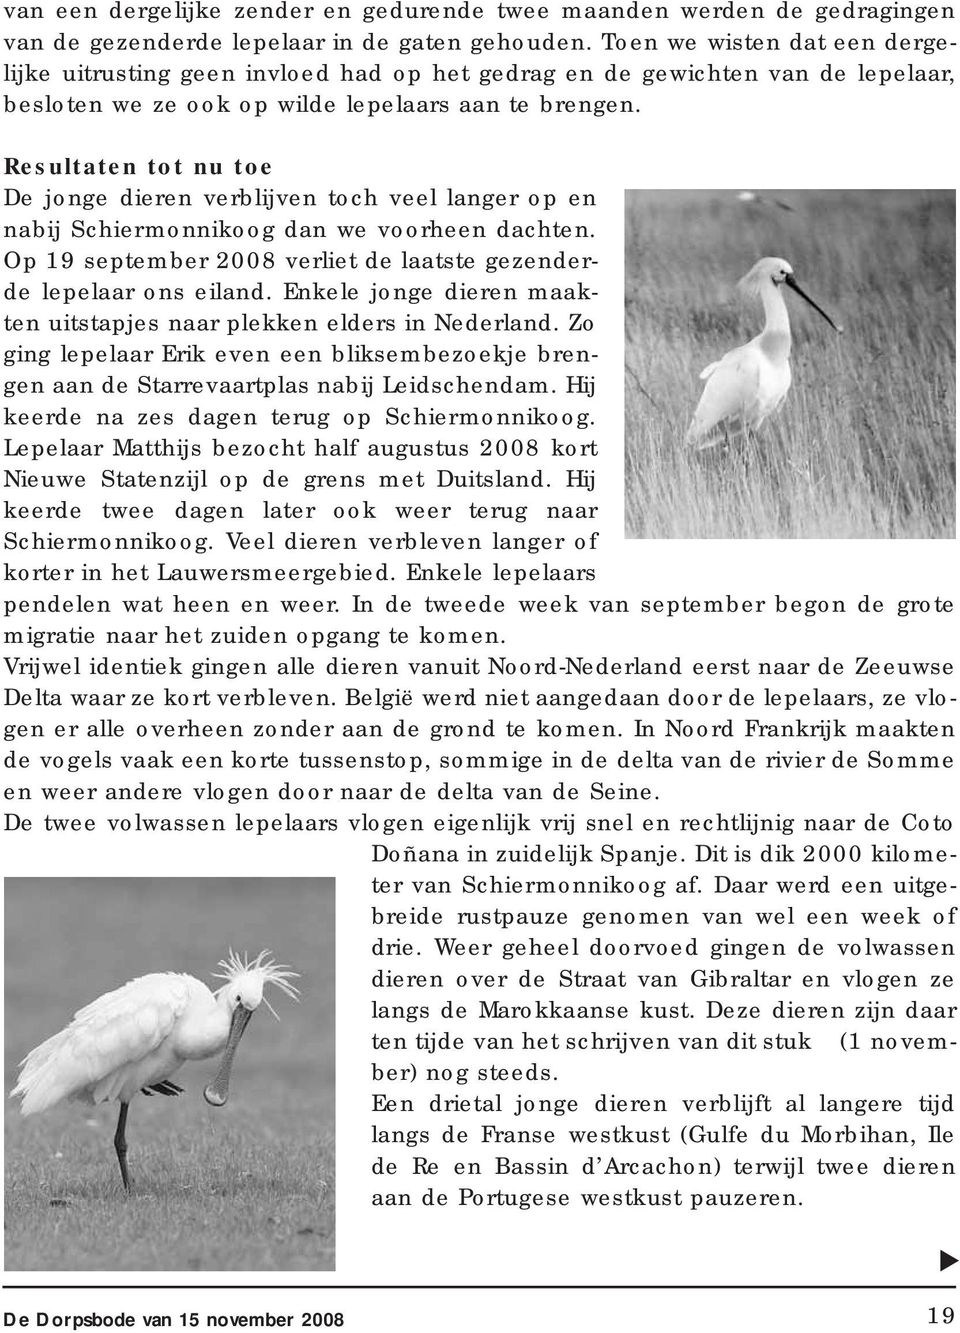 Resultaten tot nu toe De jonge dieren verblijven toch veel langer op en nabij Schiermonnikoog dan we voorheen dachten. Op 19 september 2008 verliet de laatste gezenderde lepelaar ons eiland.